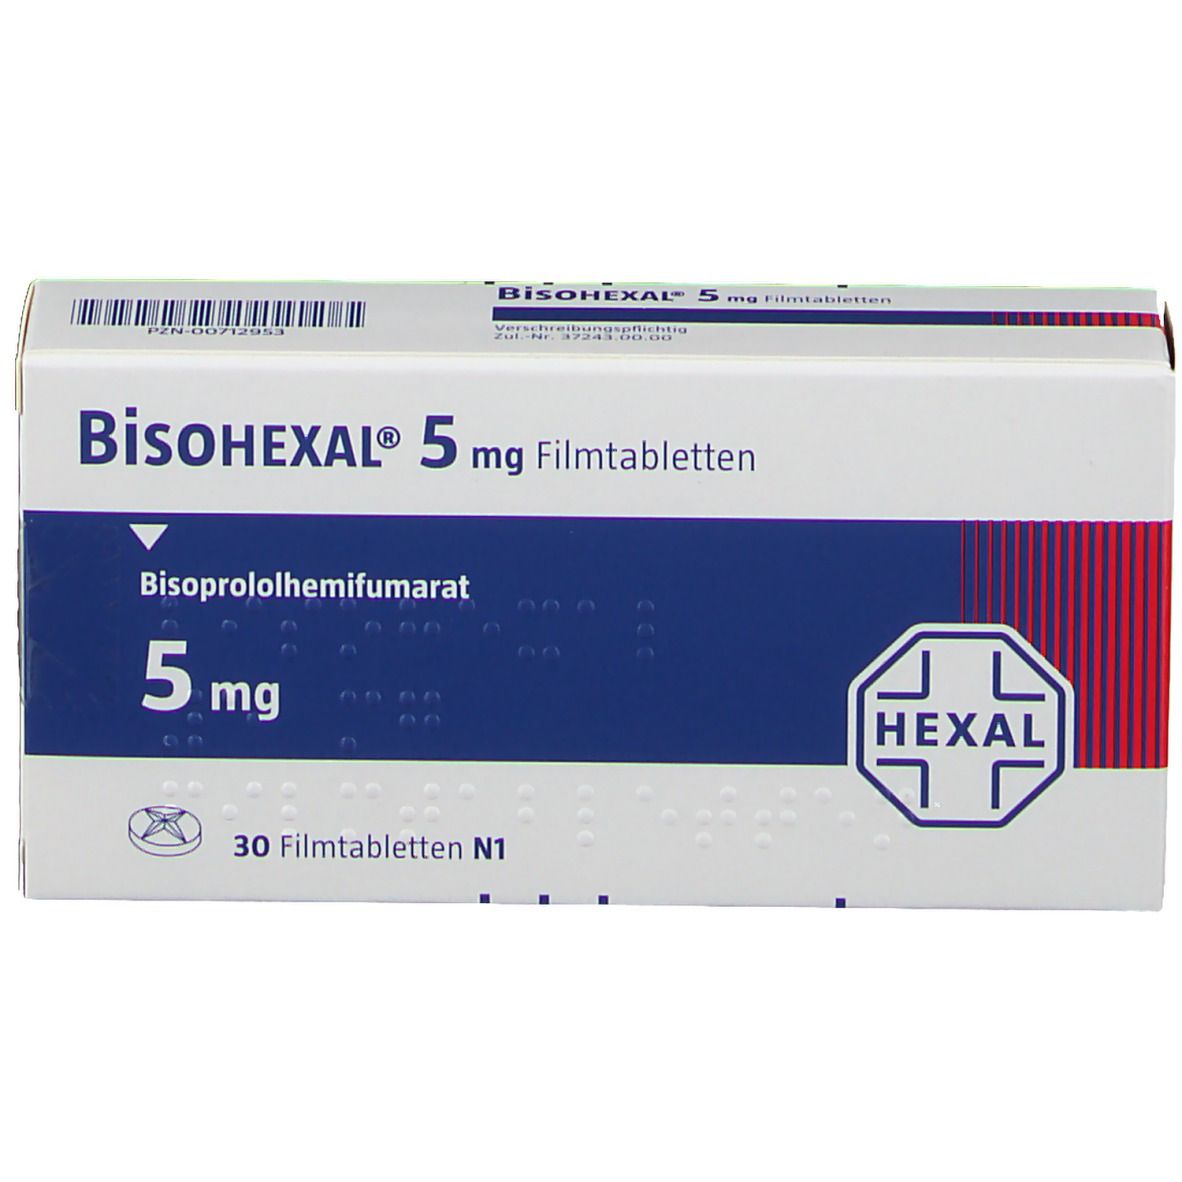 BisoHEXAL® 5 mg